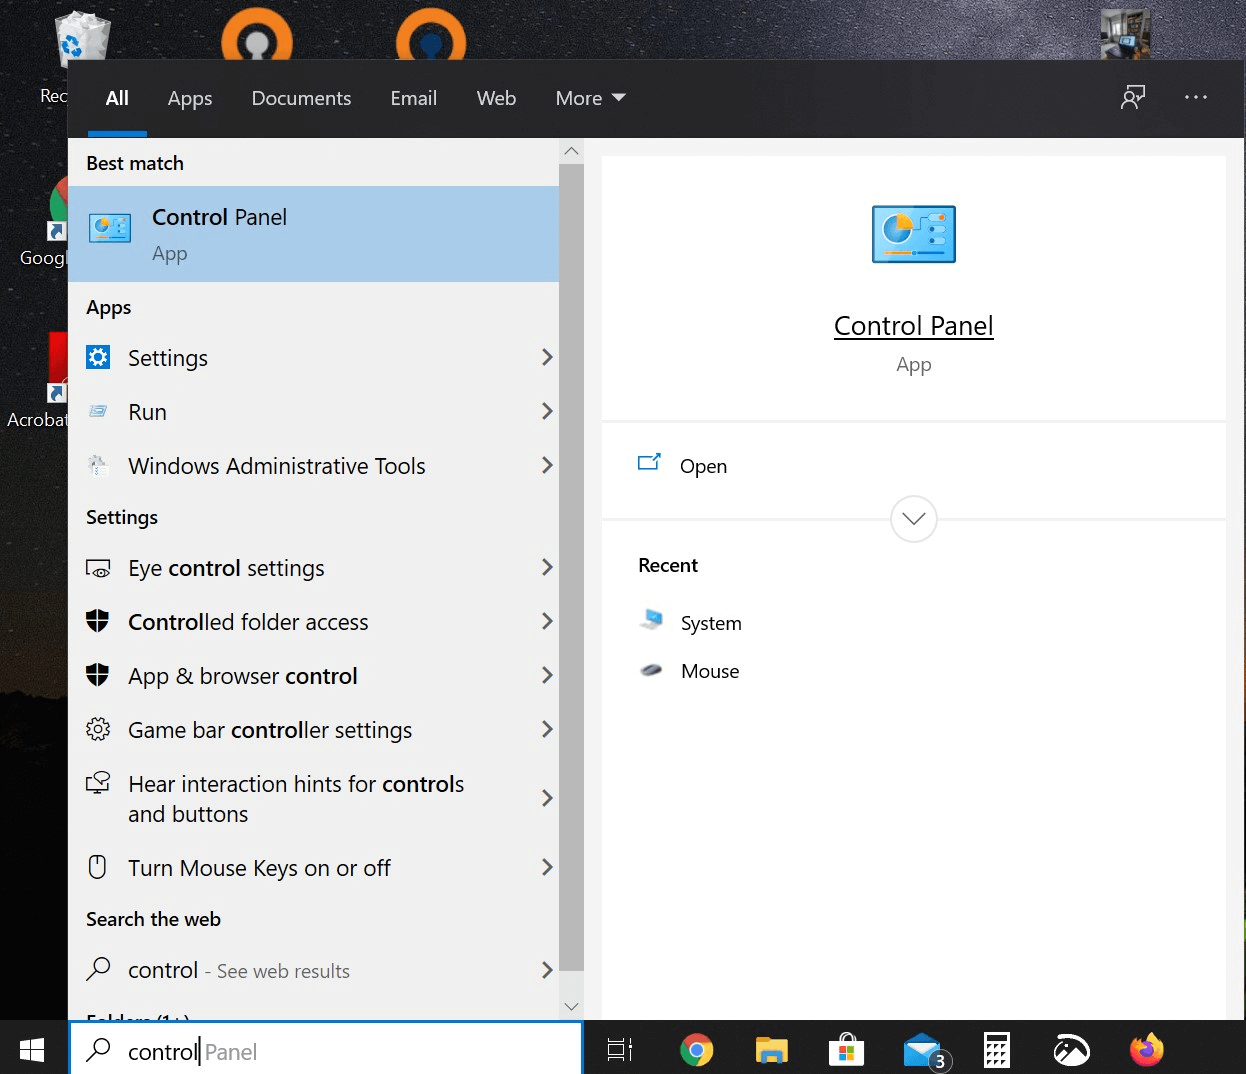 Suchfunktion in der Windows 10-Taskleiste